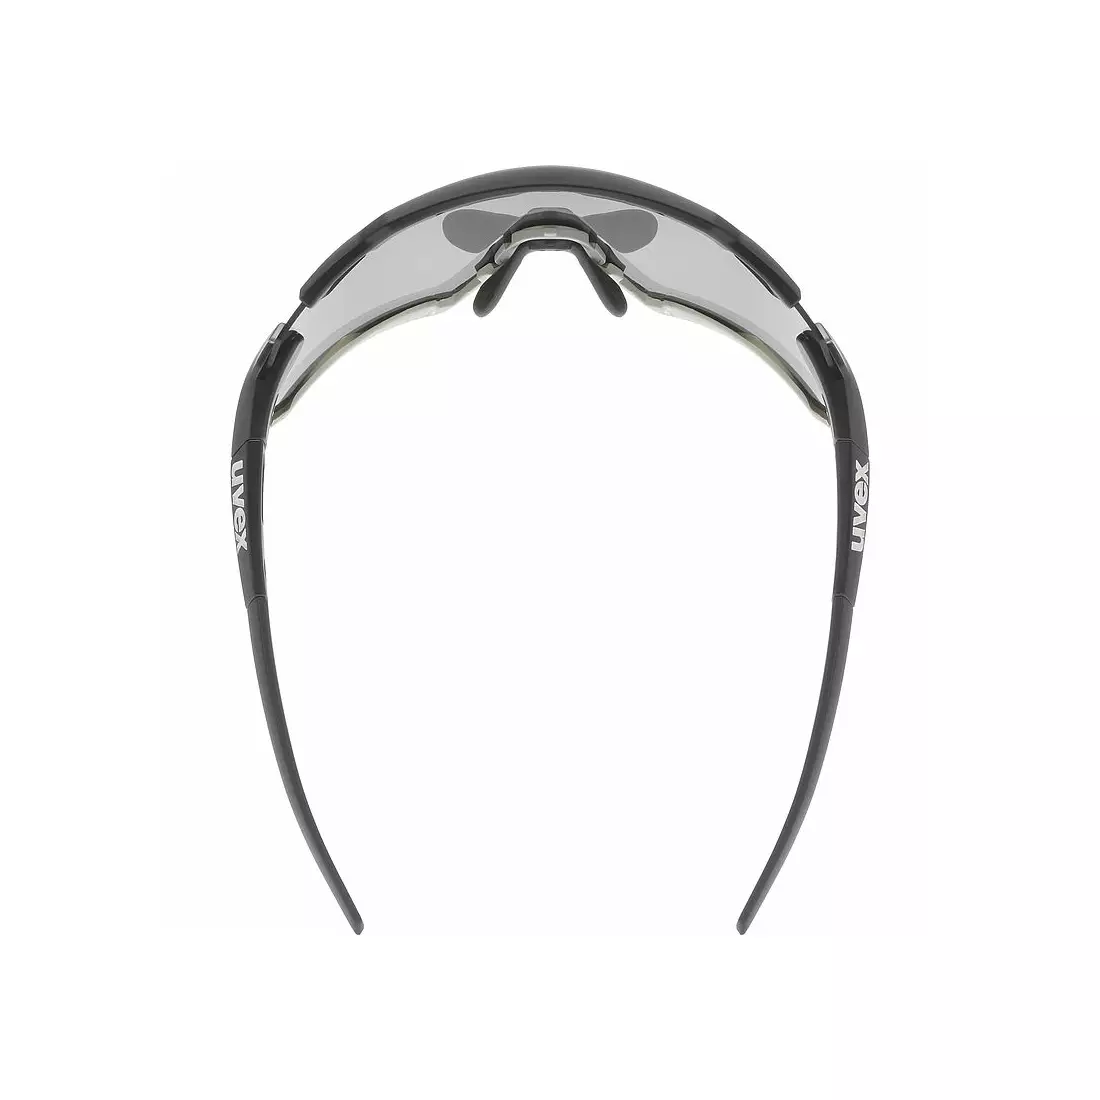 UVEX Sportbrille Sportstyle 228 spiegelsilber (S3), schwarzgrau